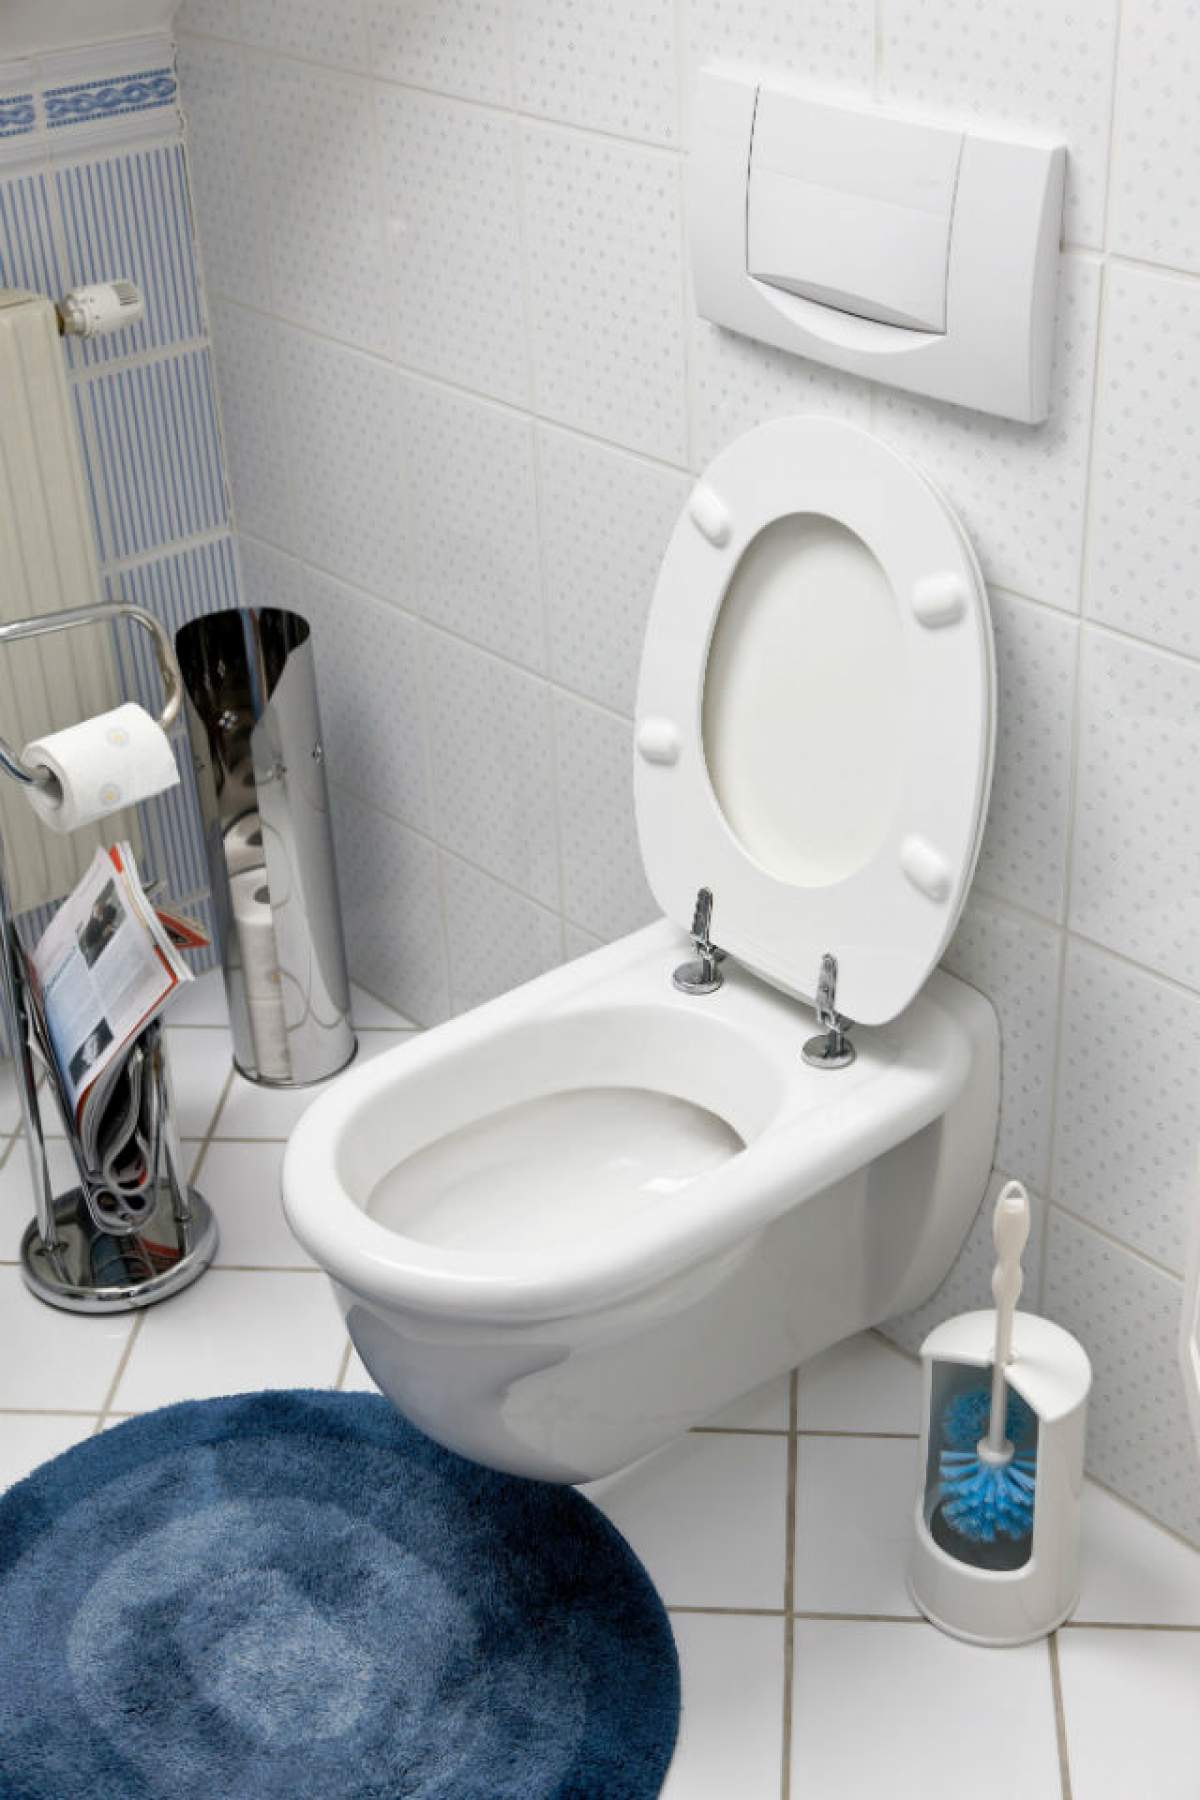 Distruge INSTANT microbii din toaletă şi neutralizează complet mirosul! Ai în casa ta două ingrediente care fac MINUNI